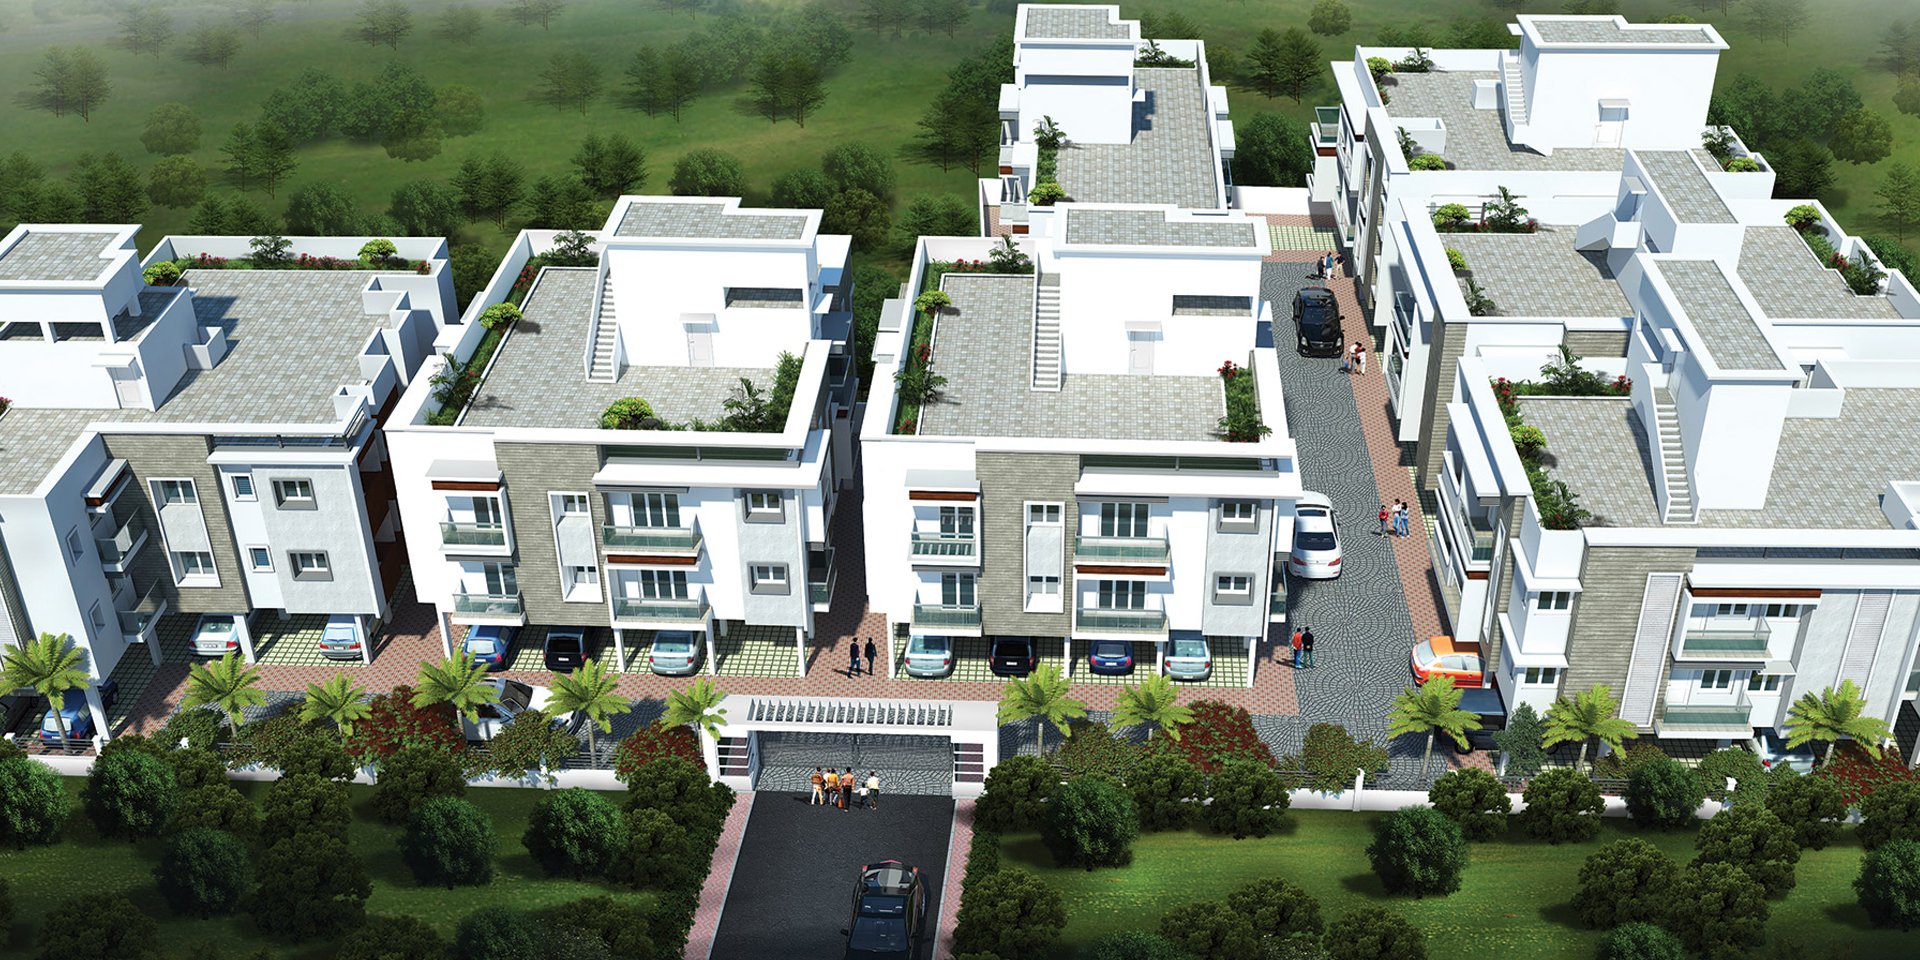 2, 3 BHK Apartment for sale in Tambaram